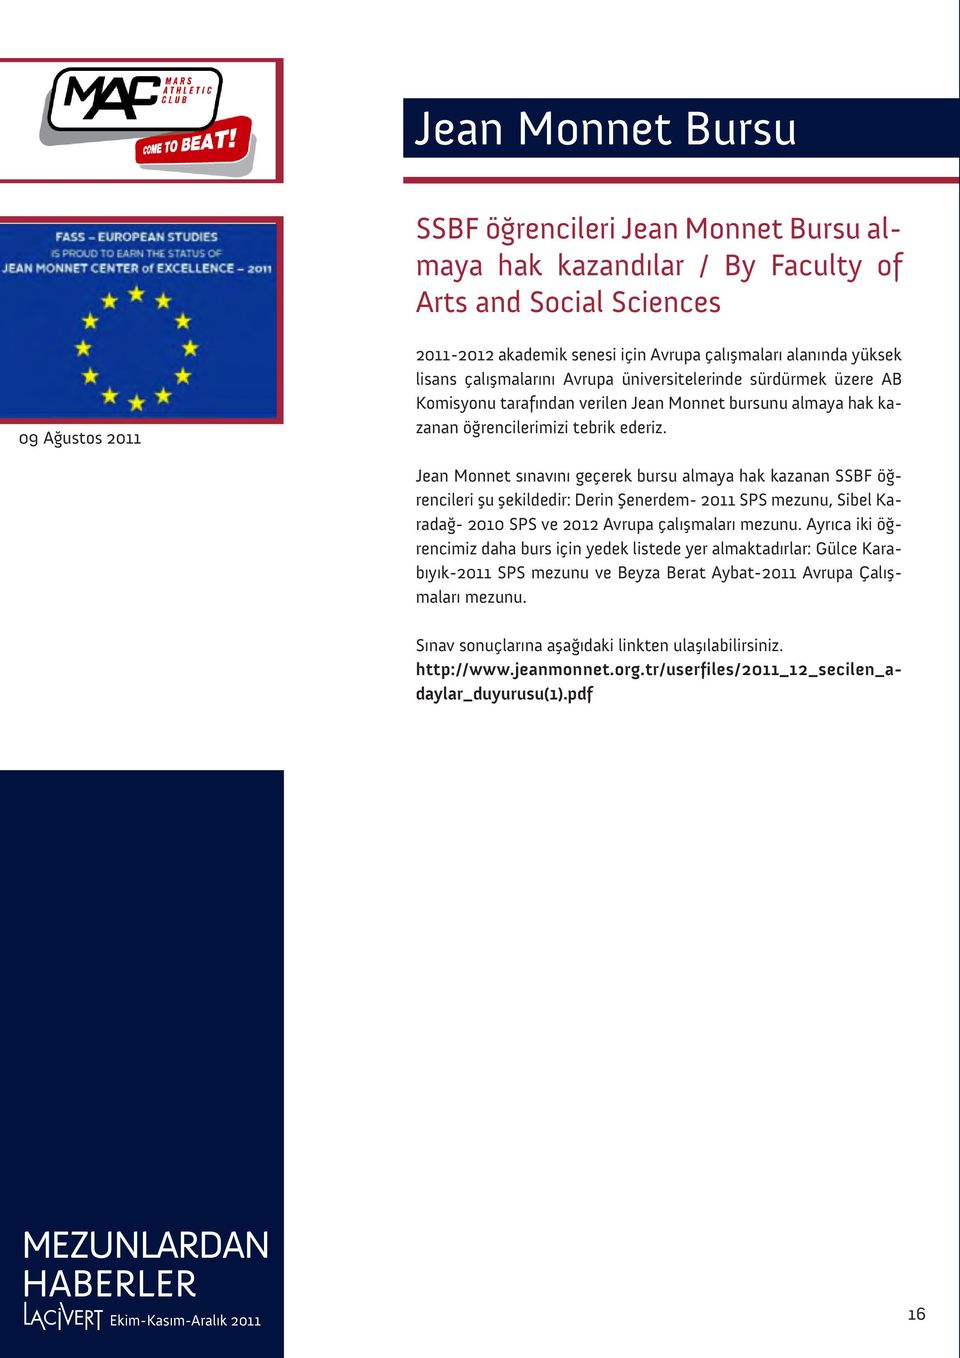 Jean Monnet sınavını geçerek bursu almaya hak kazanan SSBF öğrencileri şu şekildedir: Derin Şenerdem- 2011 SPS mezunu, Sibel Karadağ- 2010 SPS ve 2012 Avrupa çalışmaları mezunu.